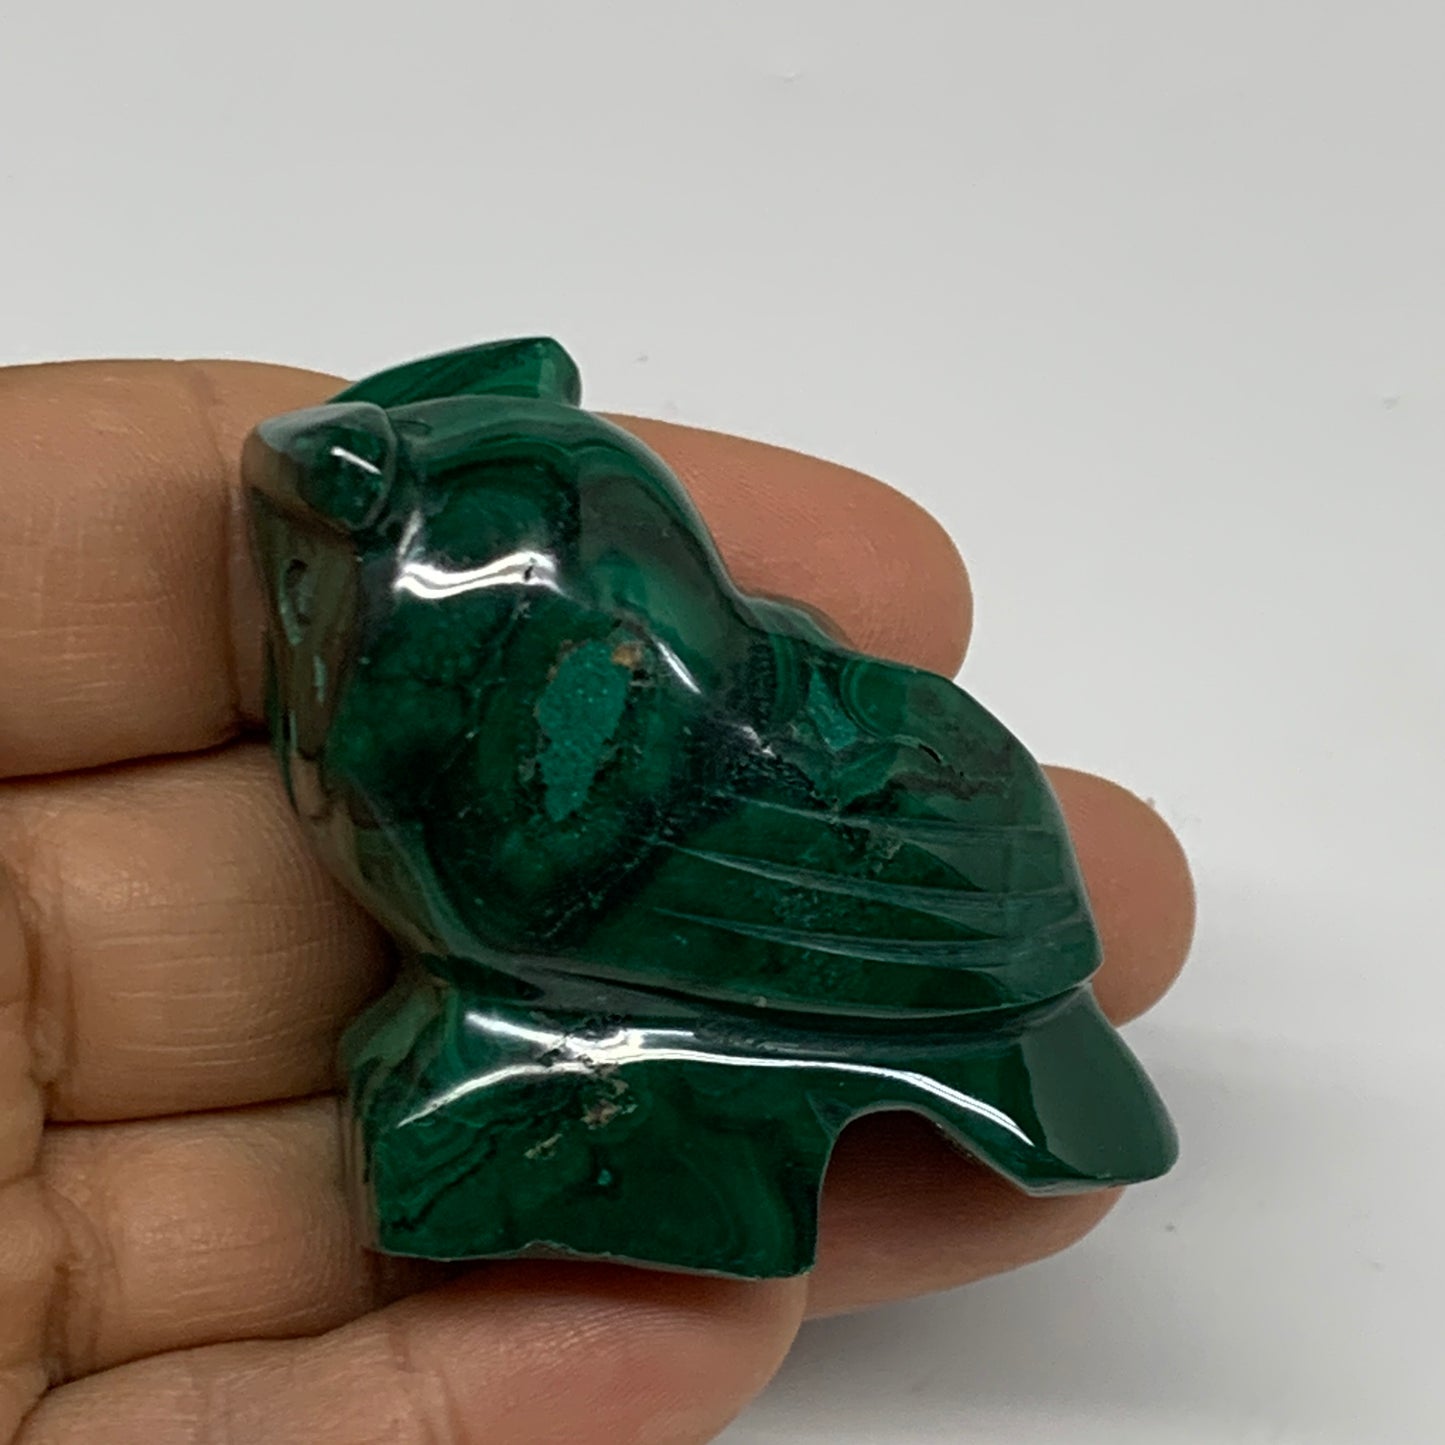 90g, 2.4"x1.8"x0.9" Natural Solid Malachite Penguin Figurine @Congo, B32749